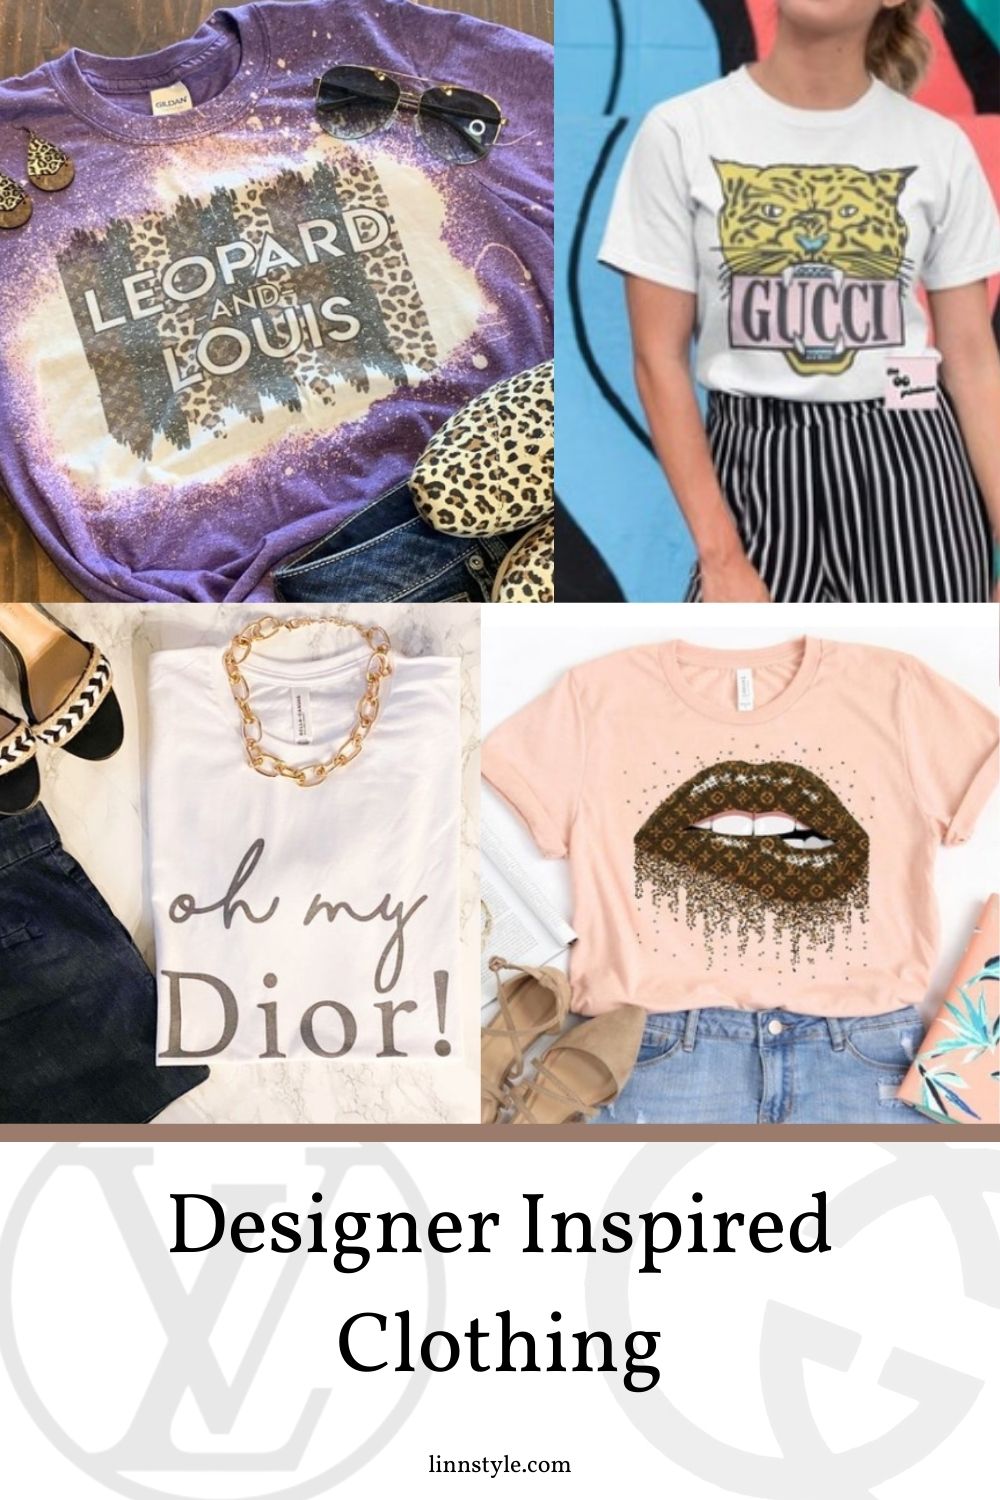 Designer Inspired Clothing - Linn Style by Jessica Linn